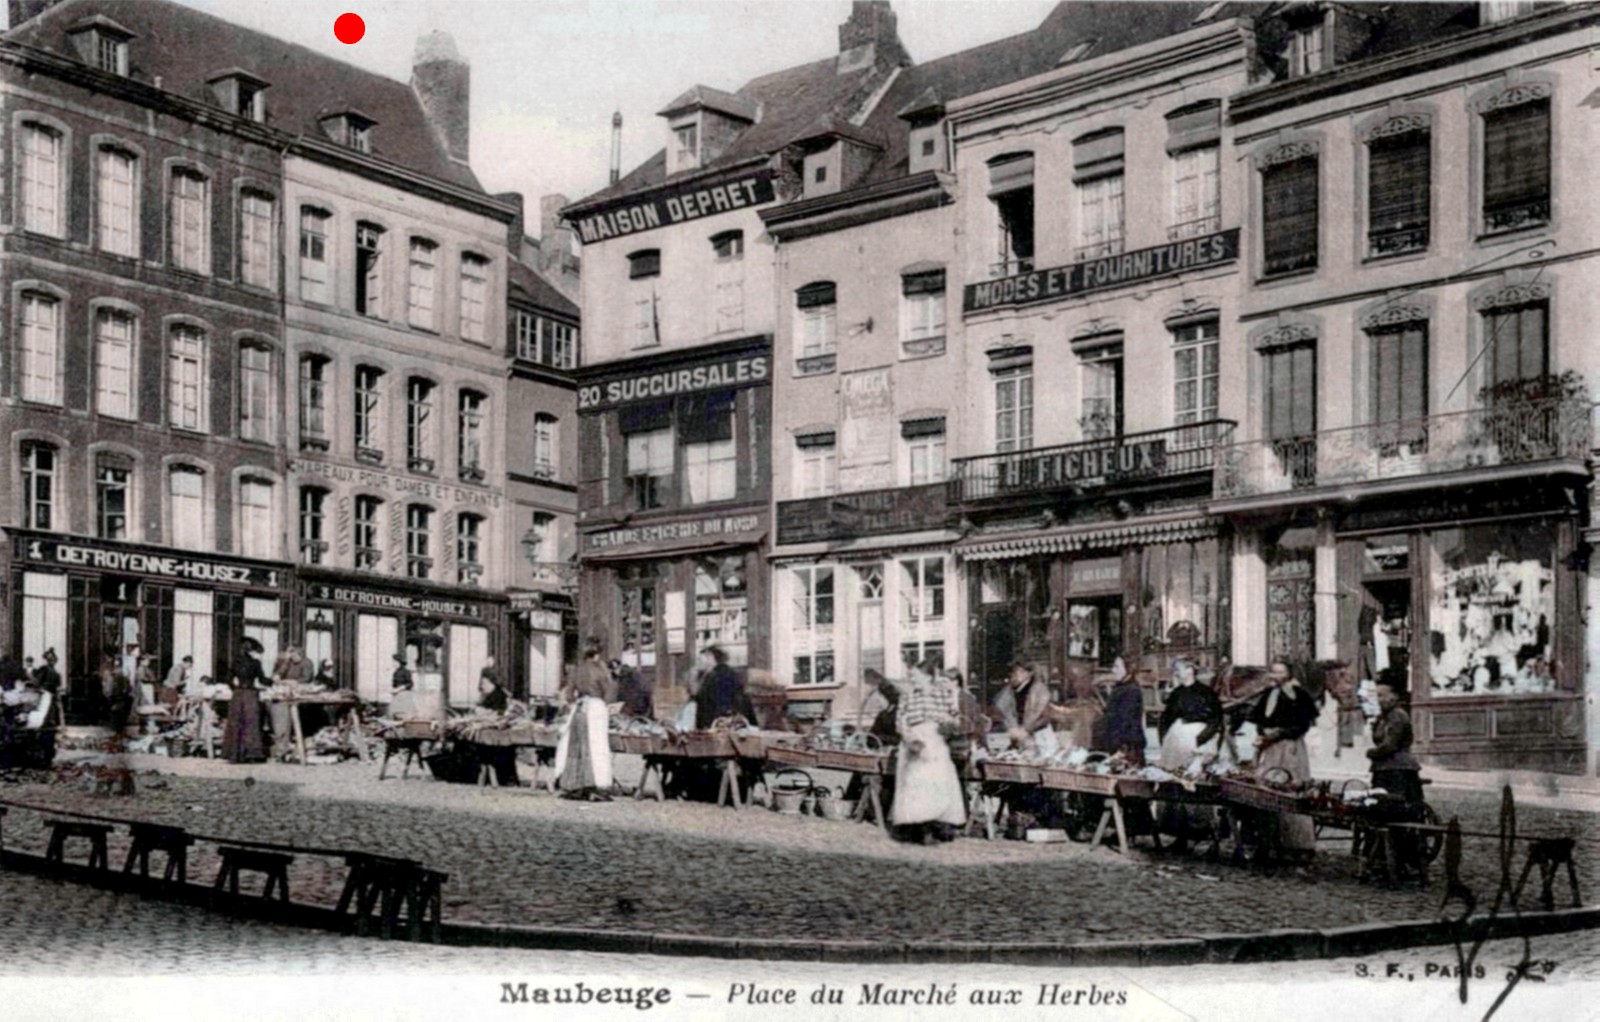 Cartes postales anciennes de Maubeuge, Marché aux Herbes.